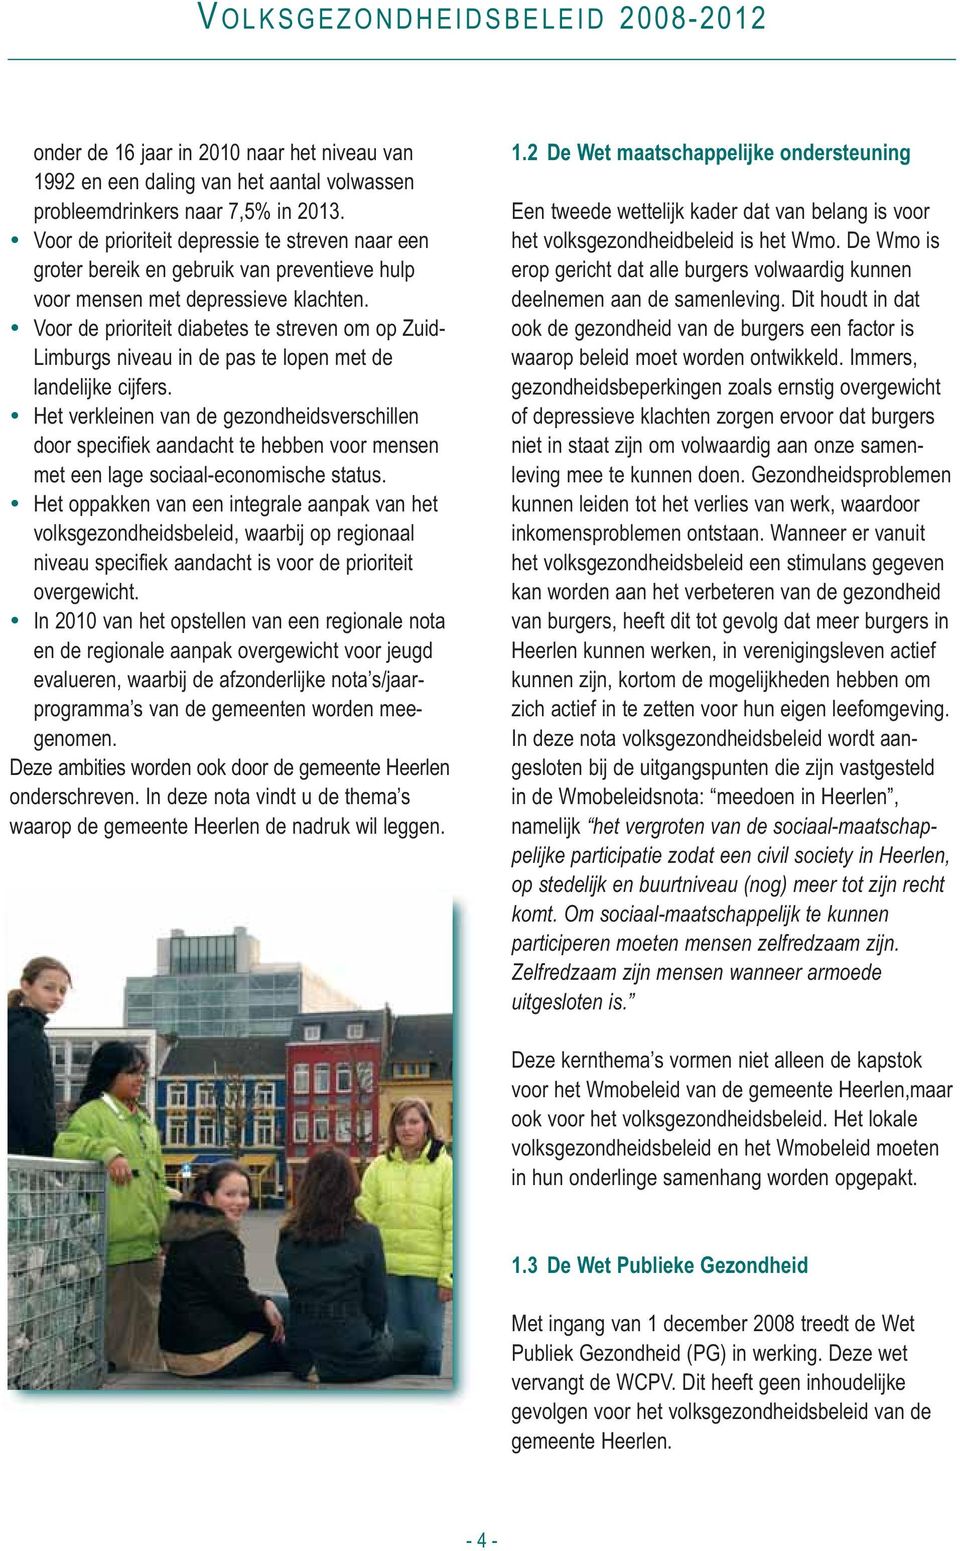 Voor de prioriteit diabetes te streven om op Zuid- Limburgs niveau in de pas te lopen met de landelijke cijfers.